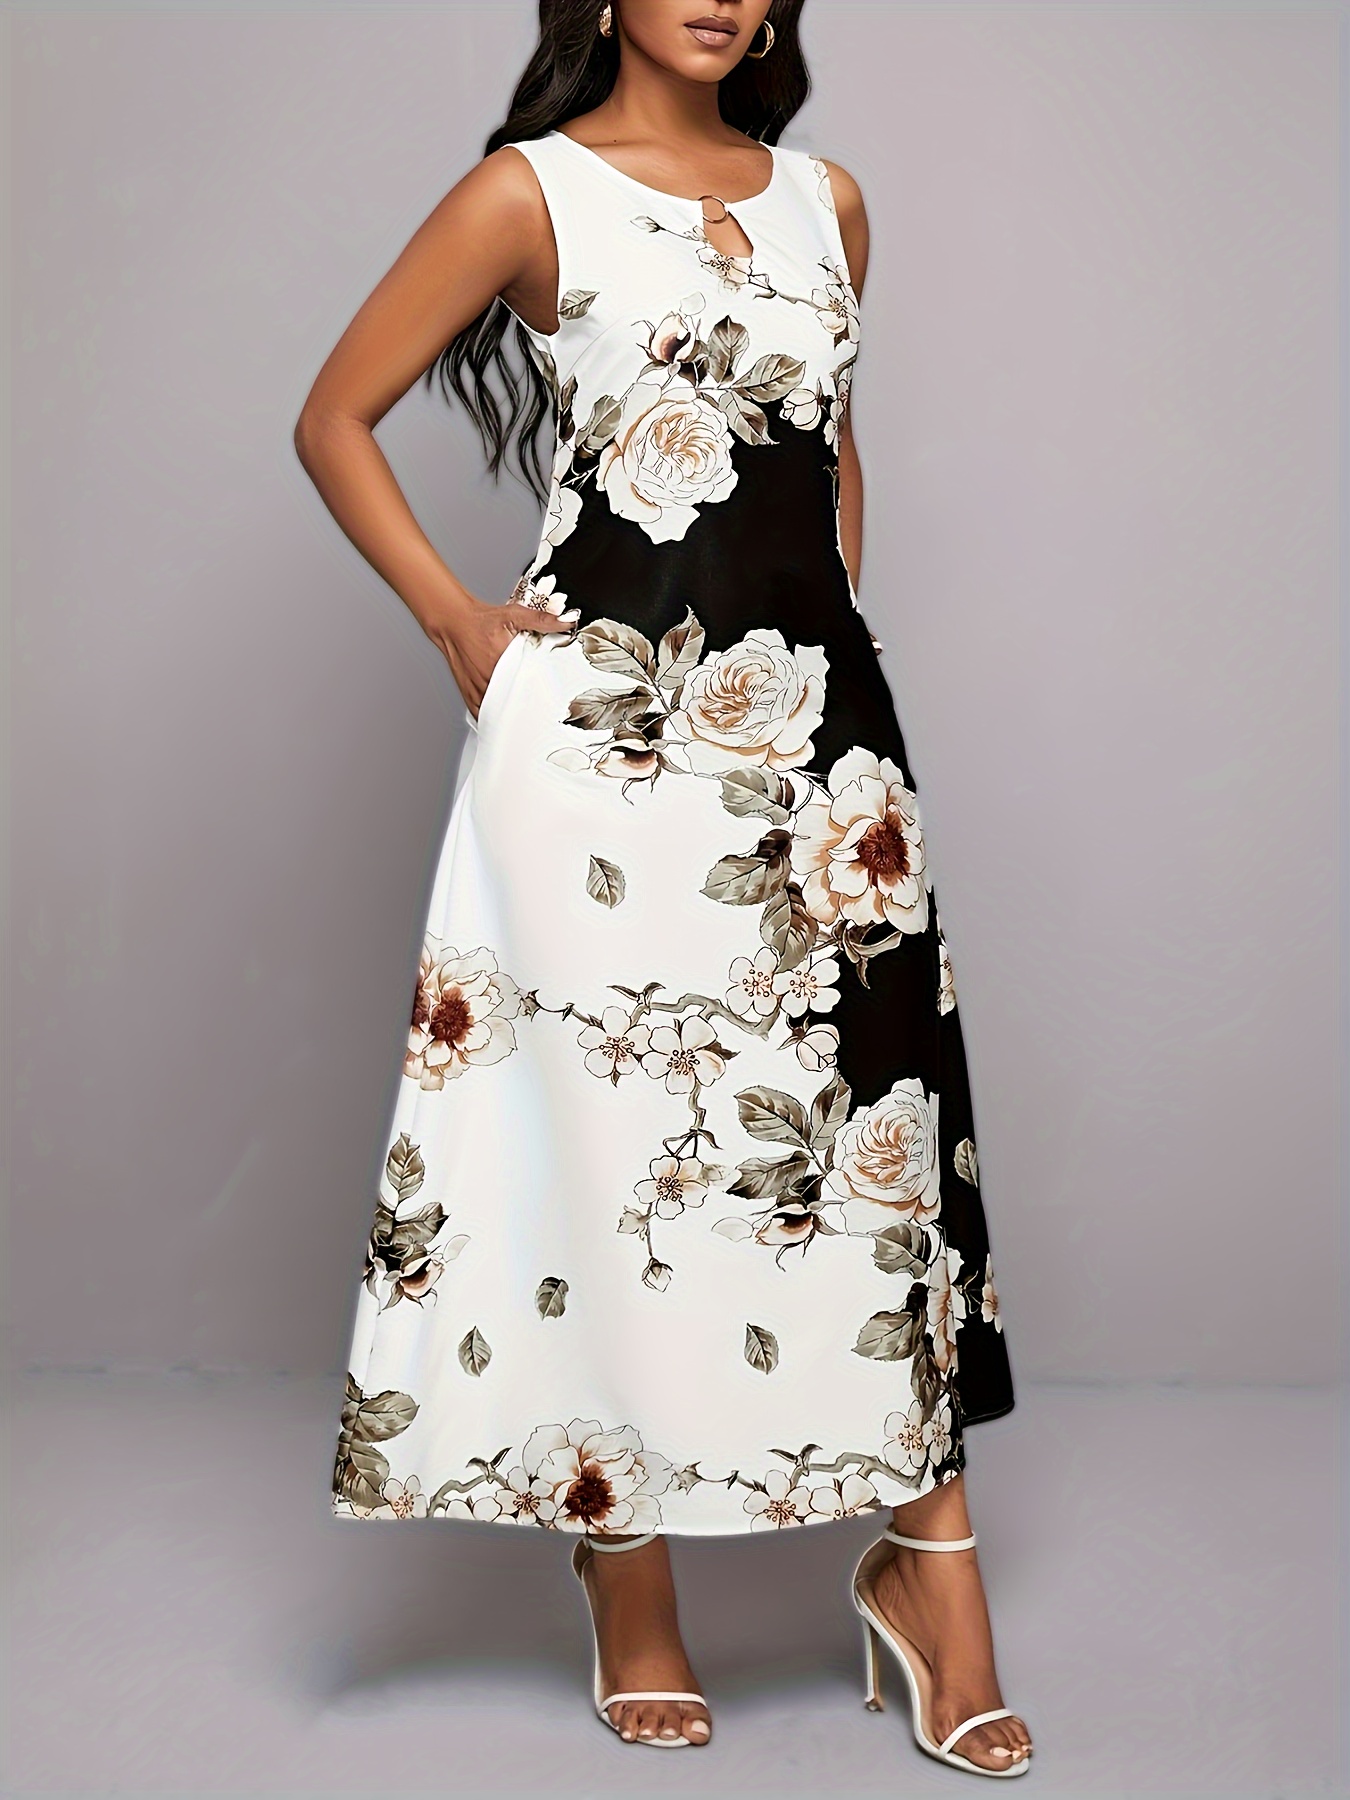 Floral Print Puff Sleeve Belted Dress  Fajas para vestidos, Mujeres  vestidos de verano, Ropa